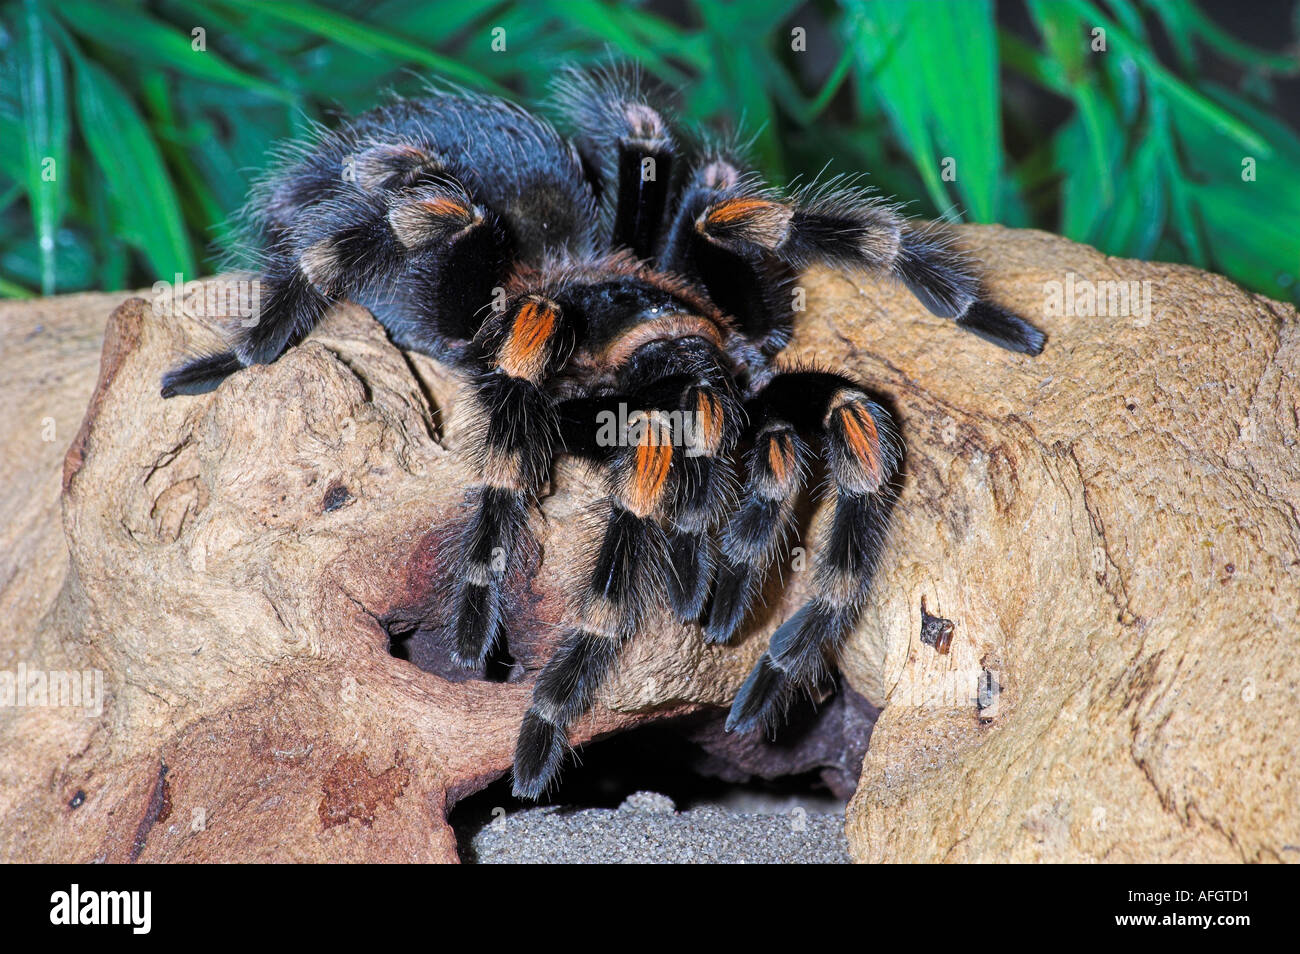 SPIDER. Mexican Redknee tarantula Brachypelma smithi Stock Photo